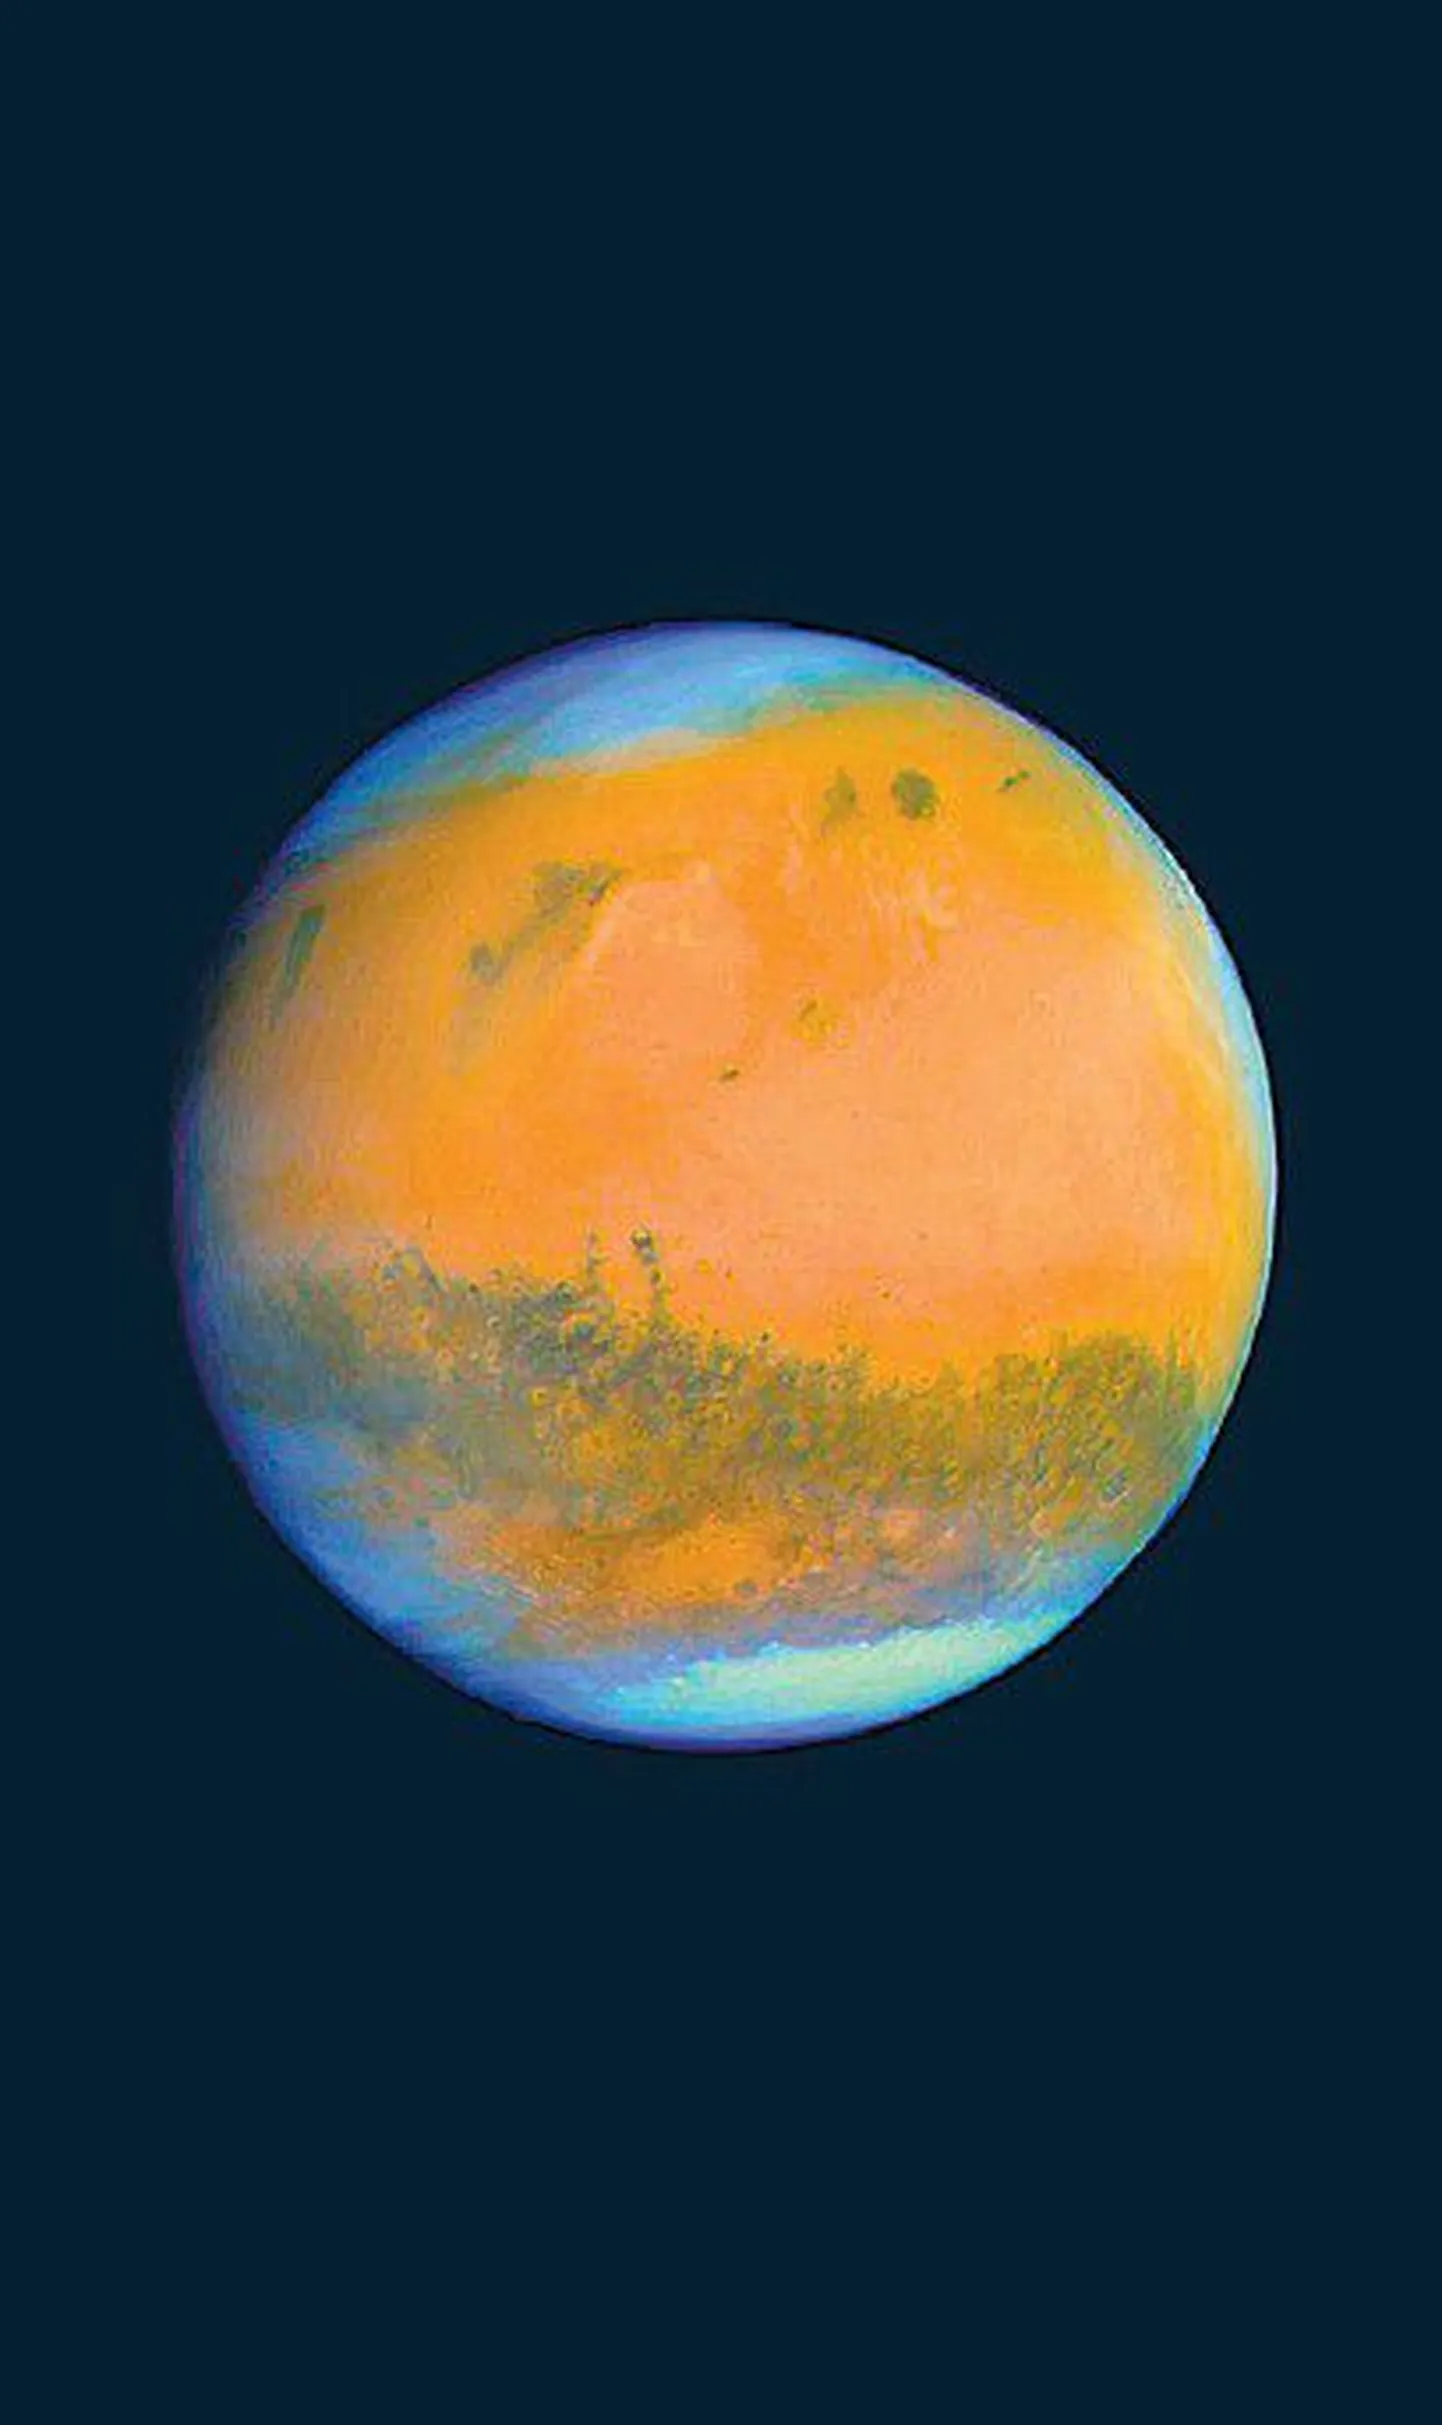 Kunstniku visioon sellest, milline võiks planeet Mars välja näha.